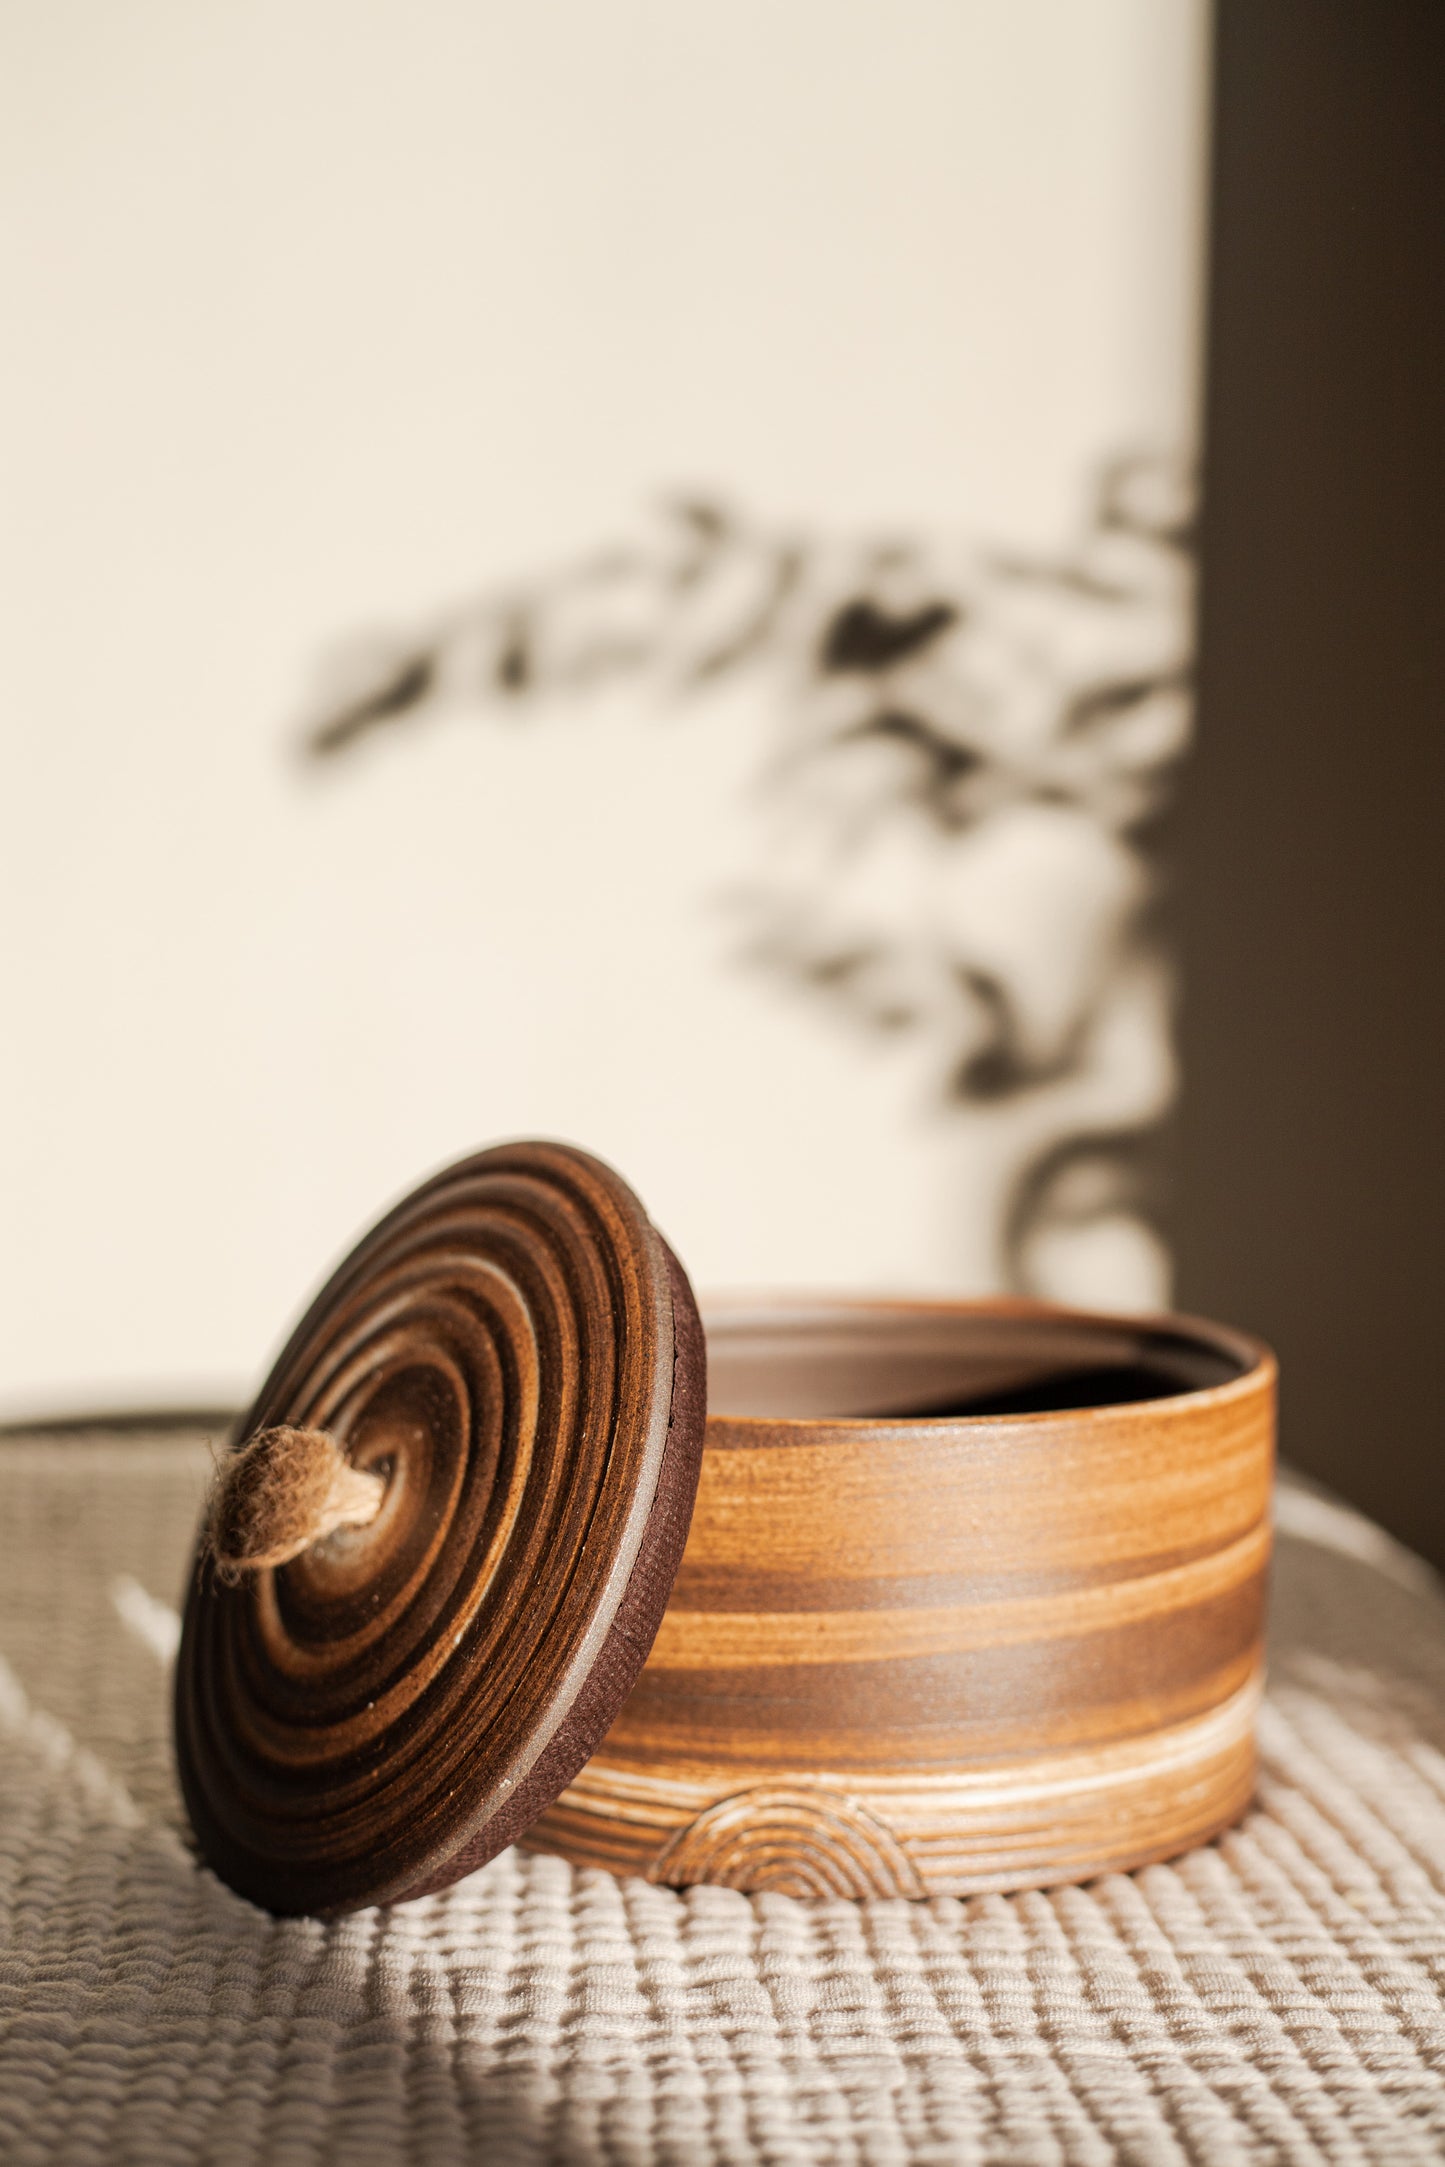 Wood urn - 500ML